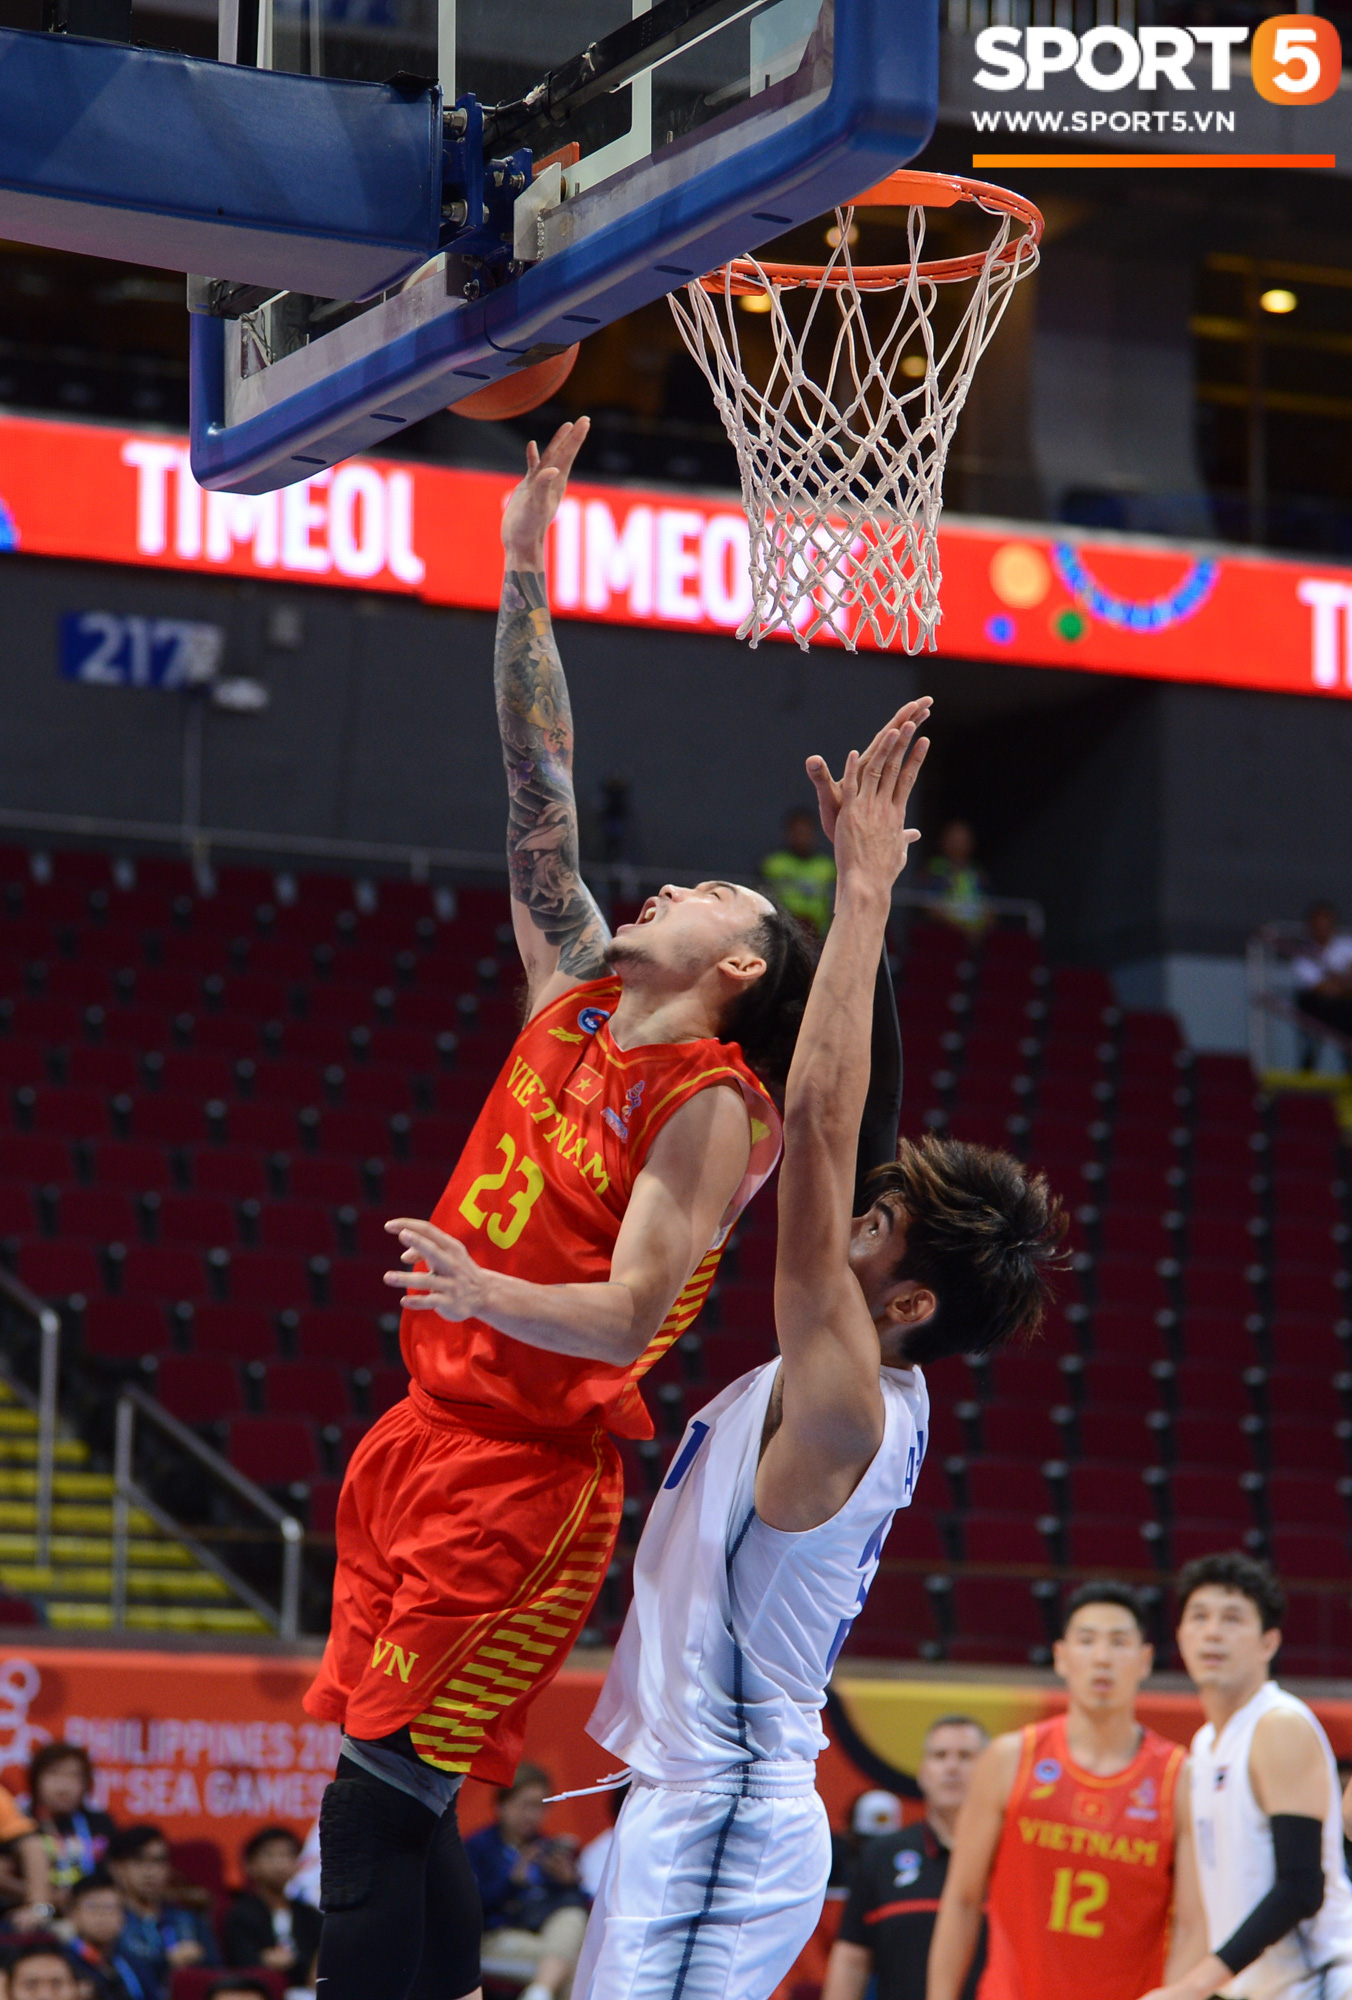 Tan giấc mộng vàng ở SEA Games 30, tuyển bóng rổ Việt Nam hướng tới tấm huy chương đồng thứ 2 - Ảnh 1.